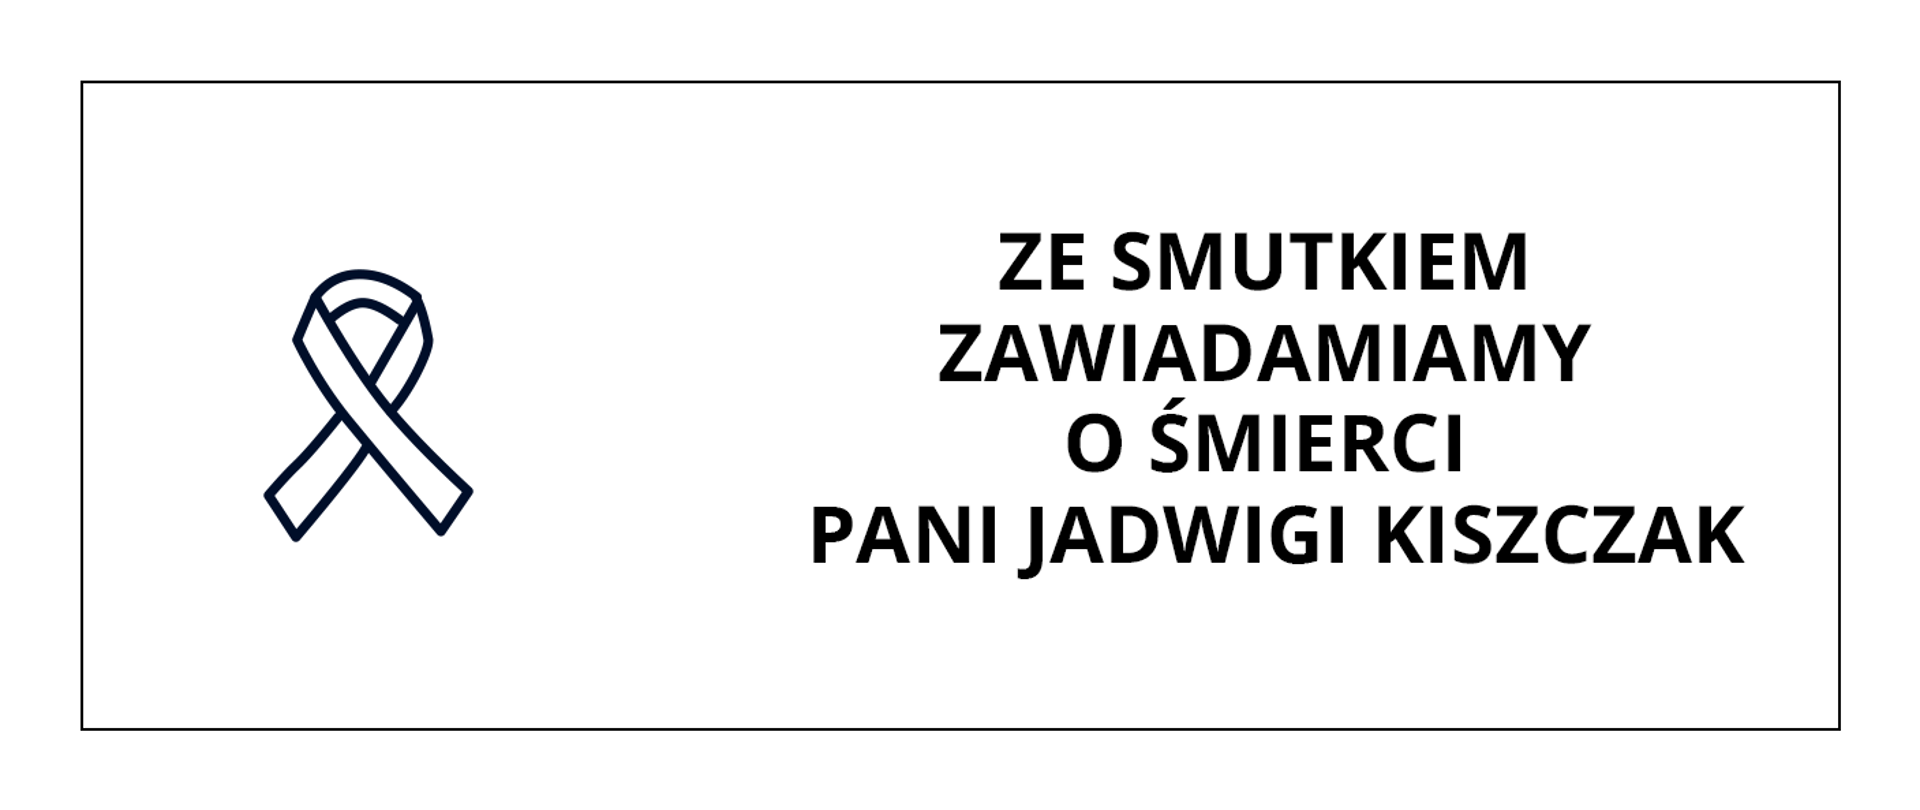 Grafika przedstawia po lewej stronie czarną wstążkę żałobną, po prawej stronie napis: Ze smutkiem zawiadamiamy o śmierci Pani Jadwigi Kiszczak